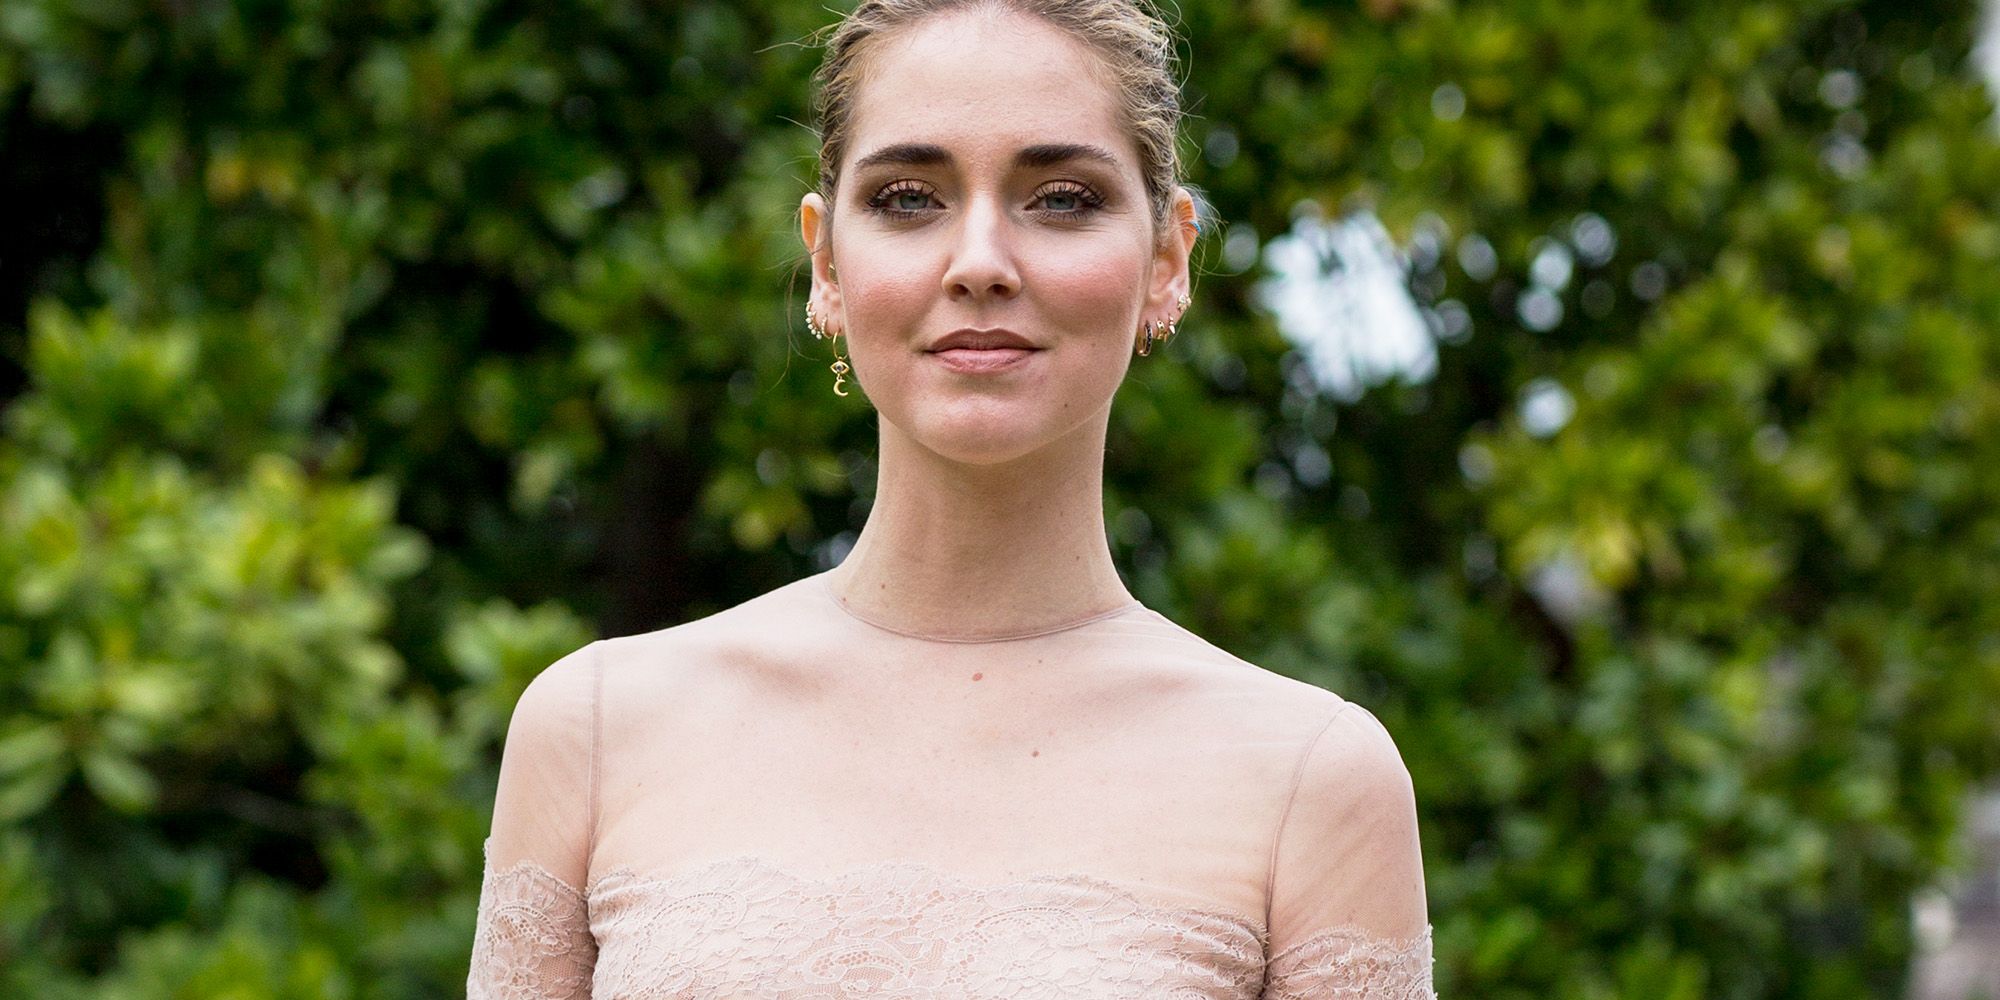 Chiara Ferragni Earned Her Wedding Dress Designer More Media Value